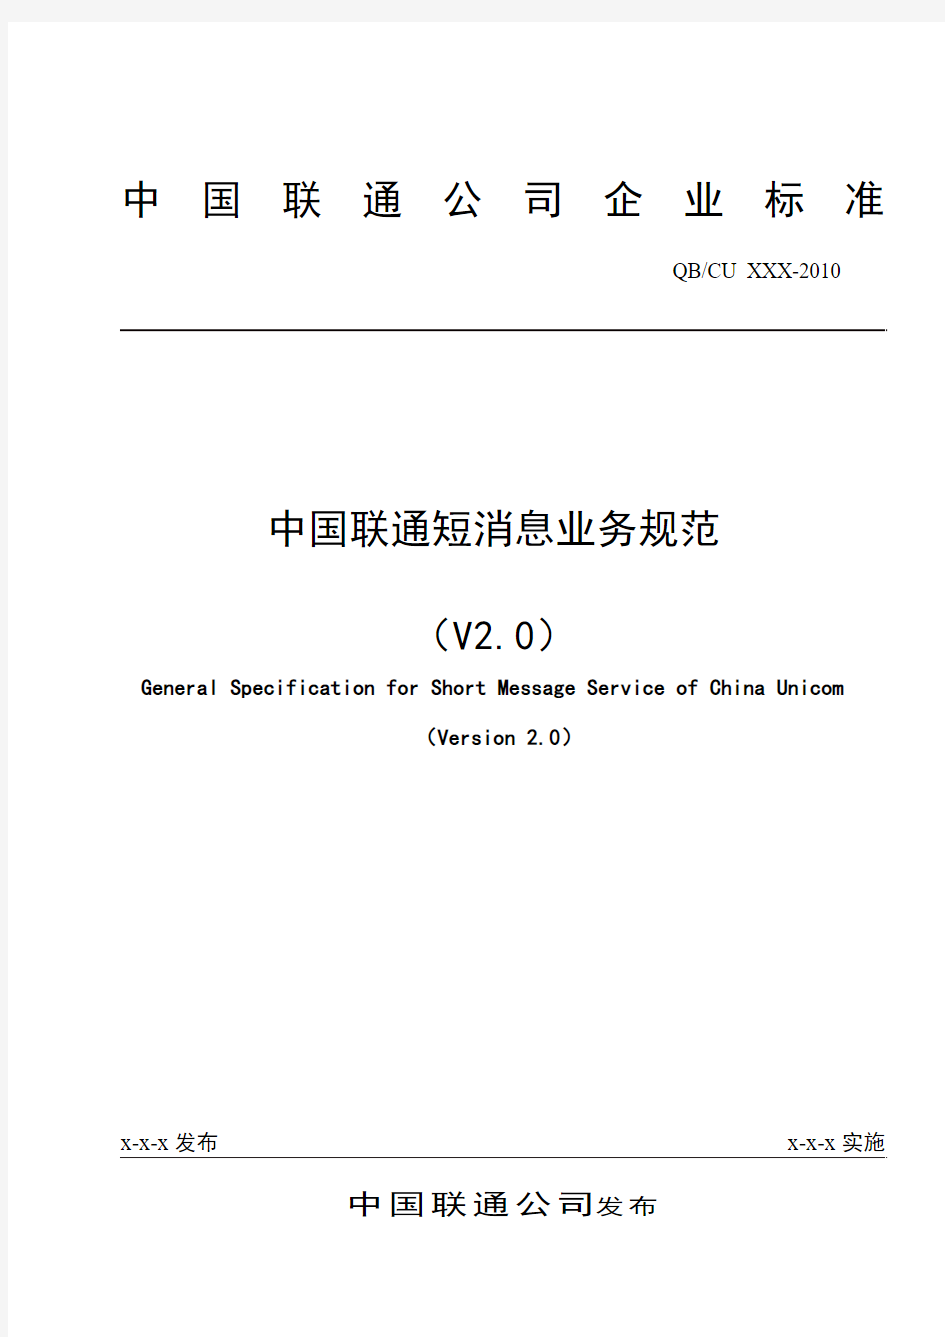 中国联通短消息业务规范V2.0